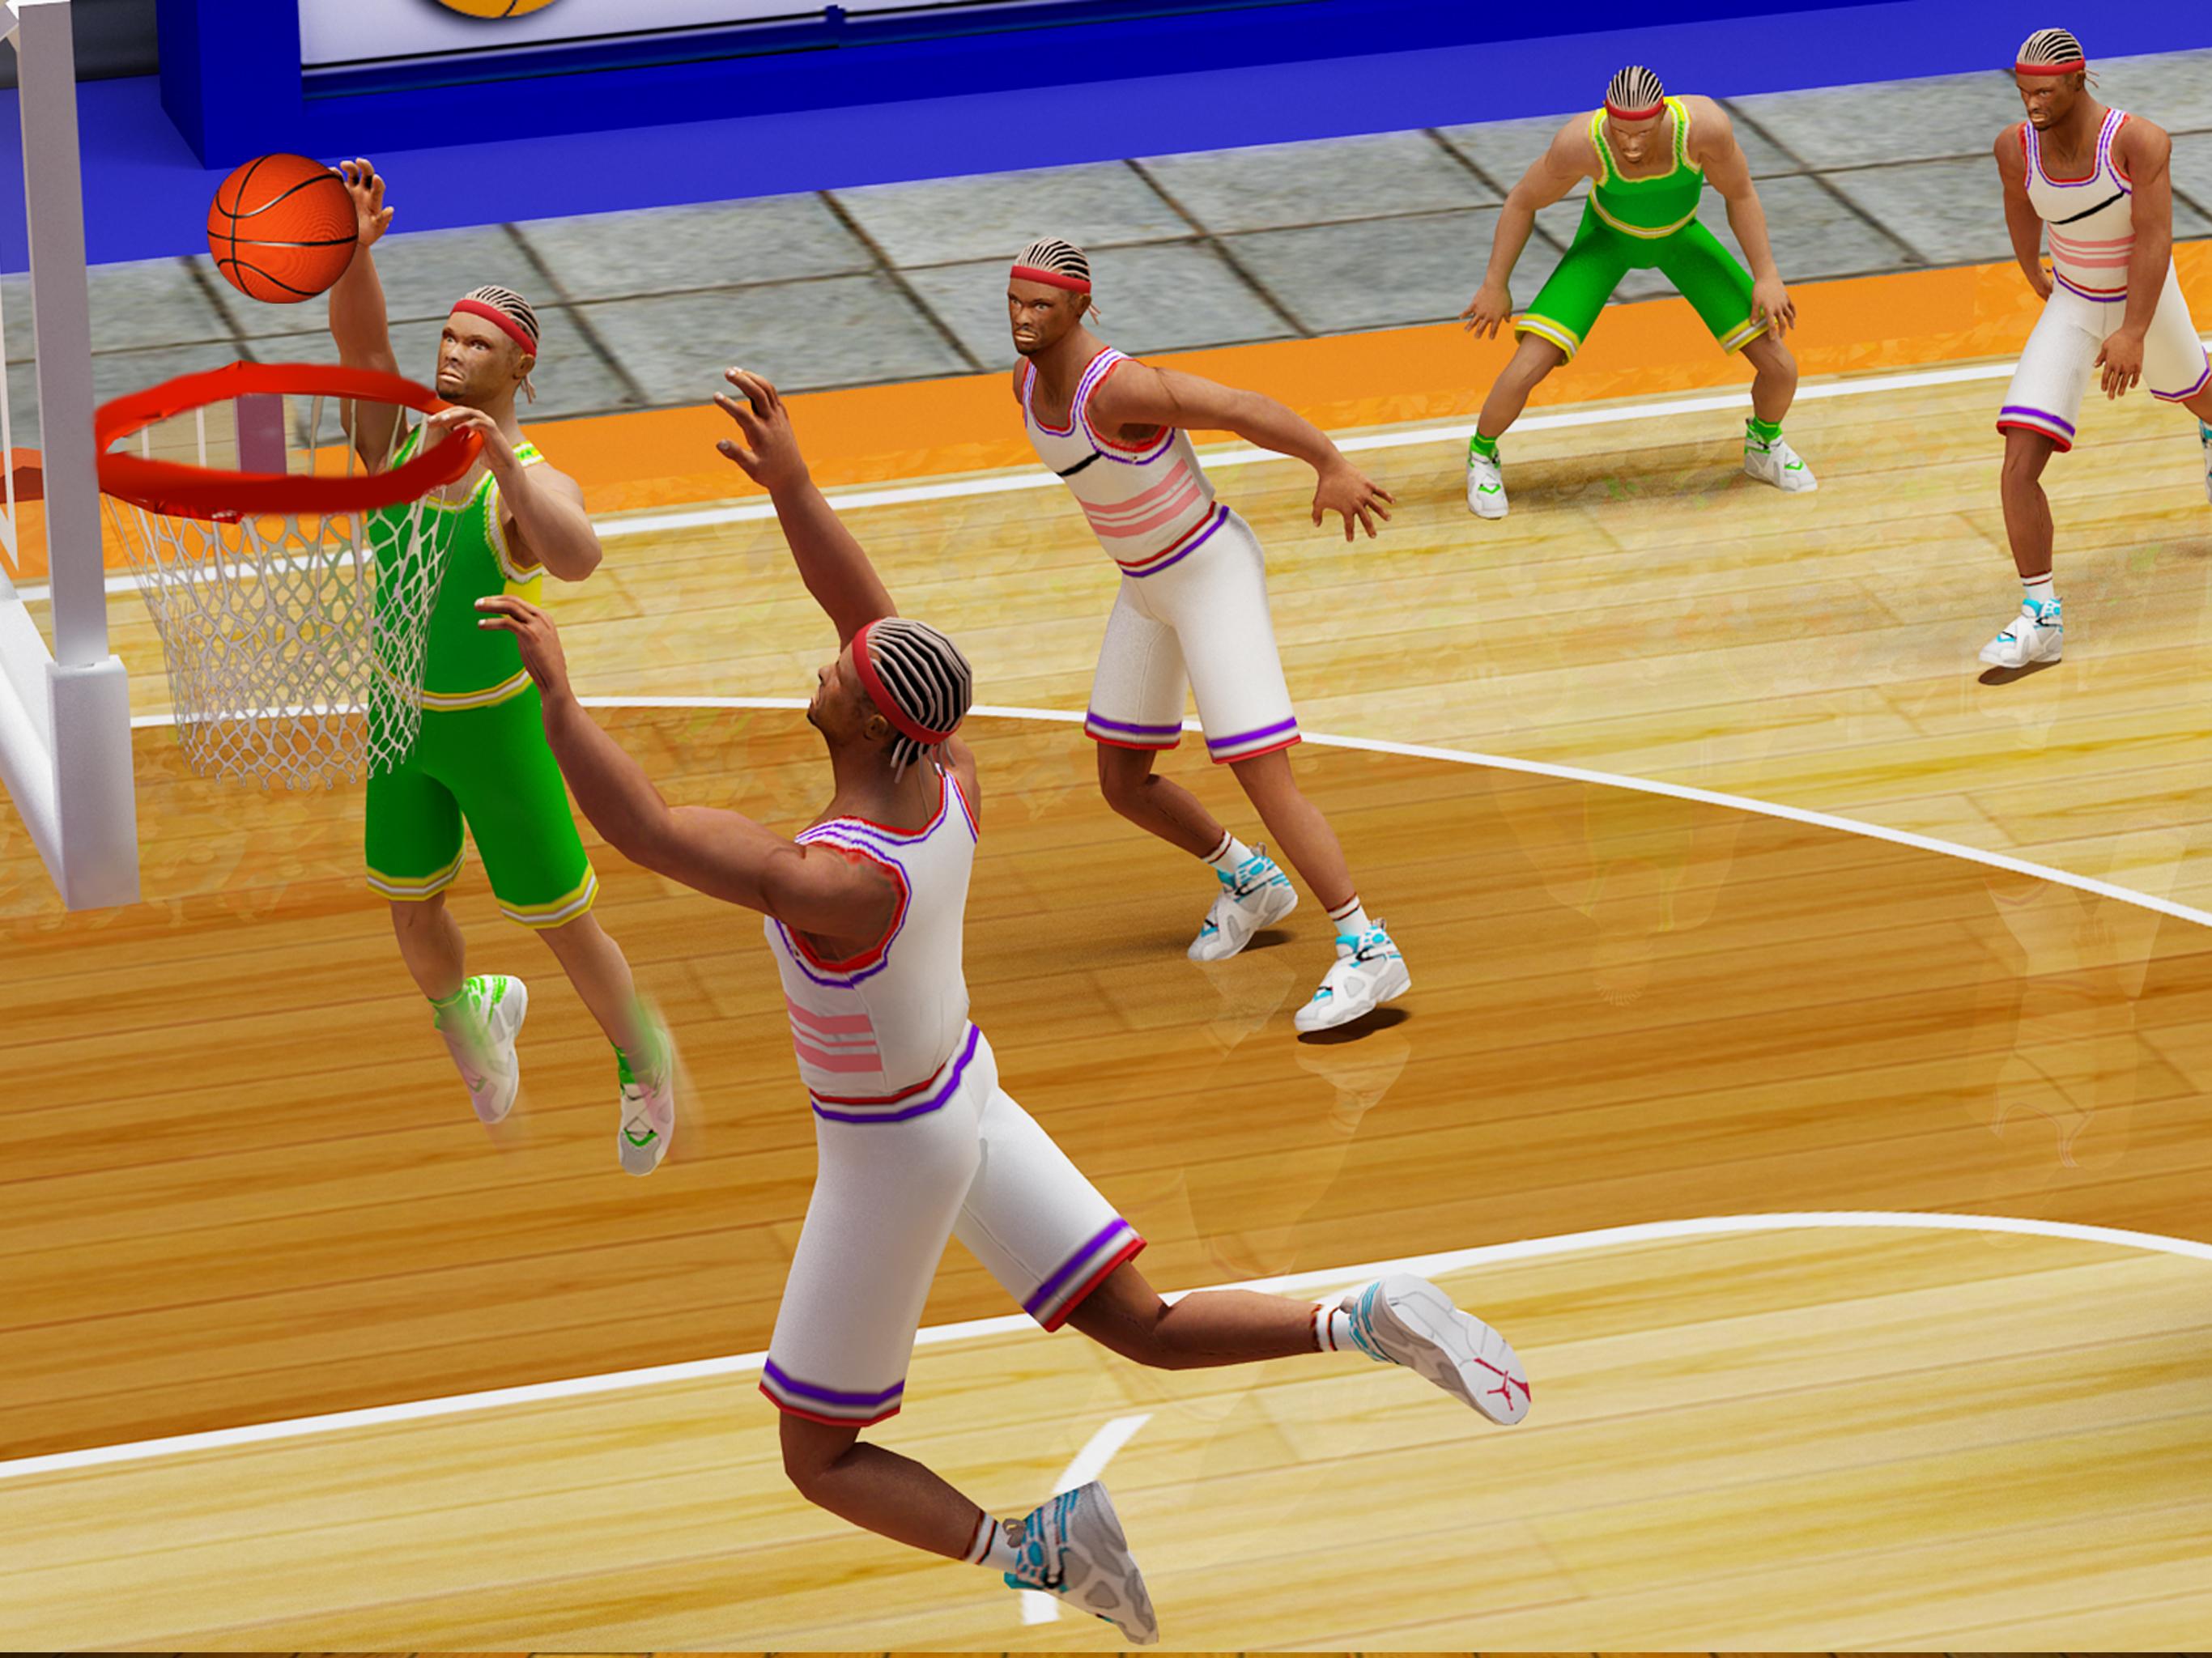 Баскетбольная игра очко. Баскетбол игра Hoop. Воздушный баскетбол игра. Звезда баскетбола игра. Баскетбольные игры по 4 человека.